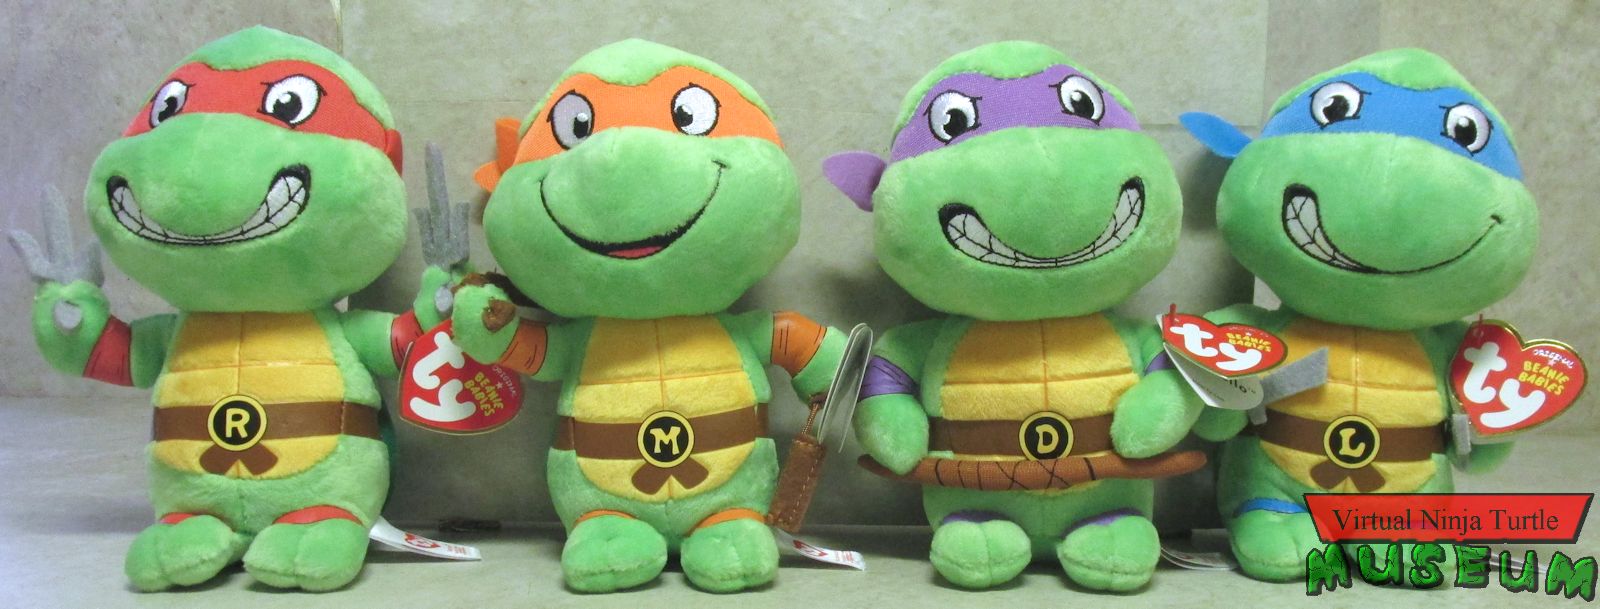 teenage mutant ninja turtles beanie babies